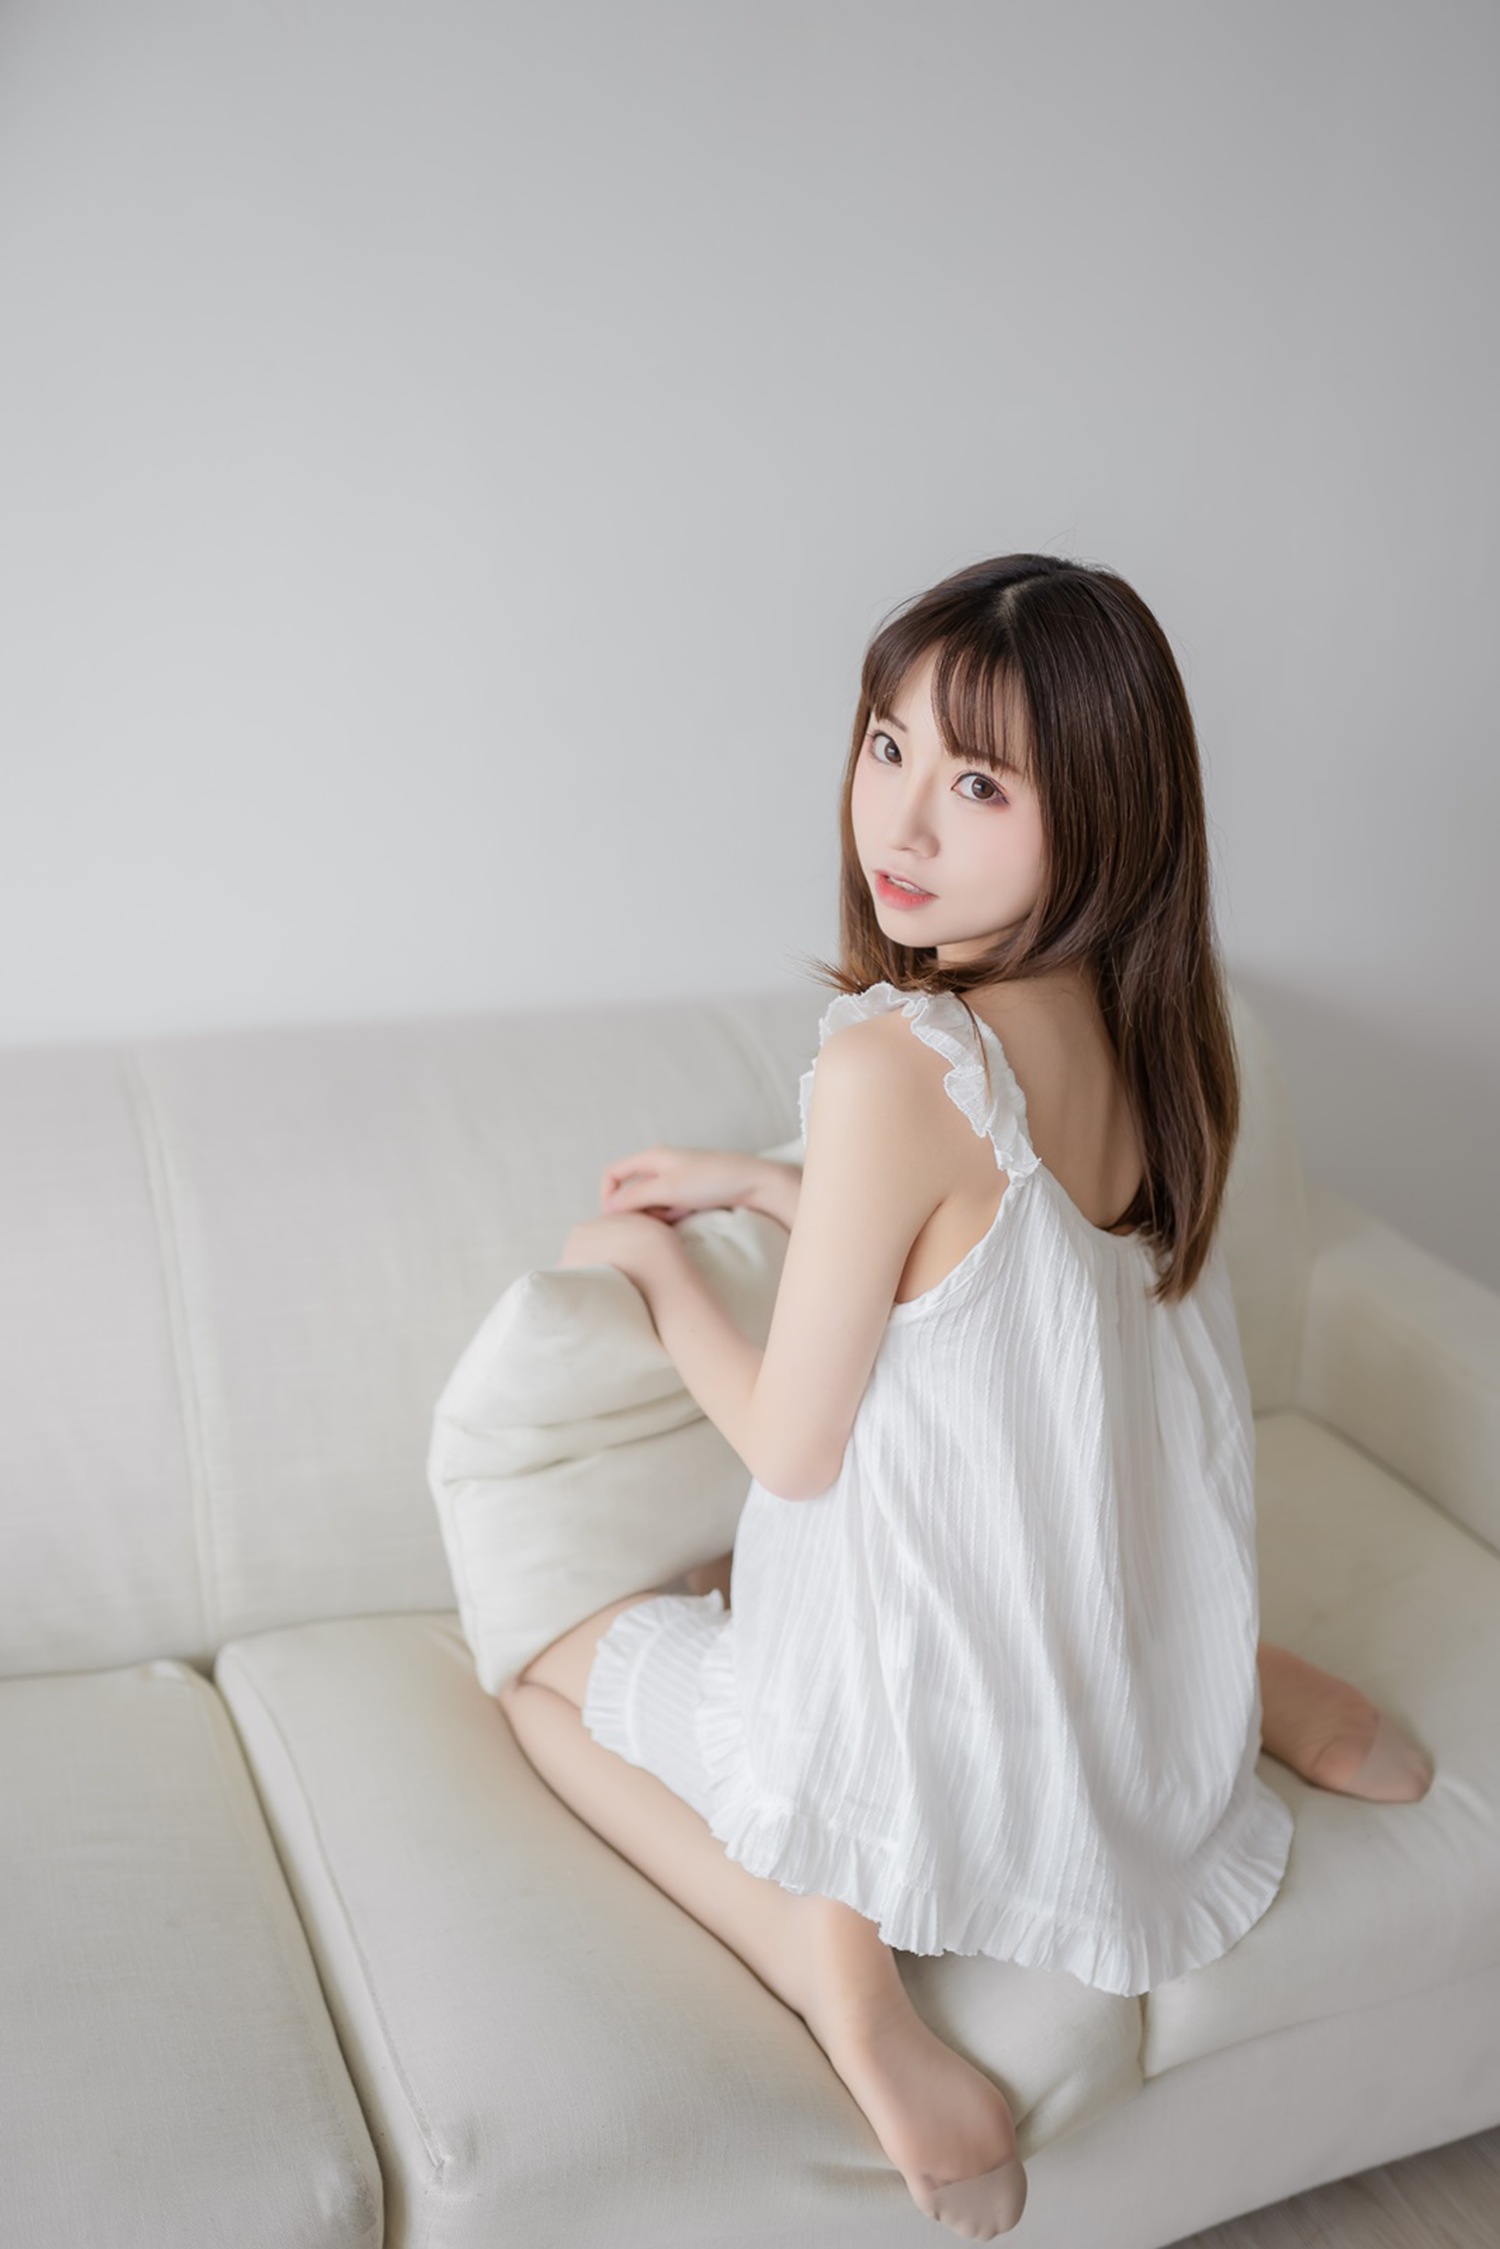 绮太郎 Kitaro &#8211; 白色睡衣 [46P]第1张